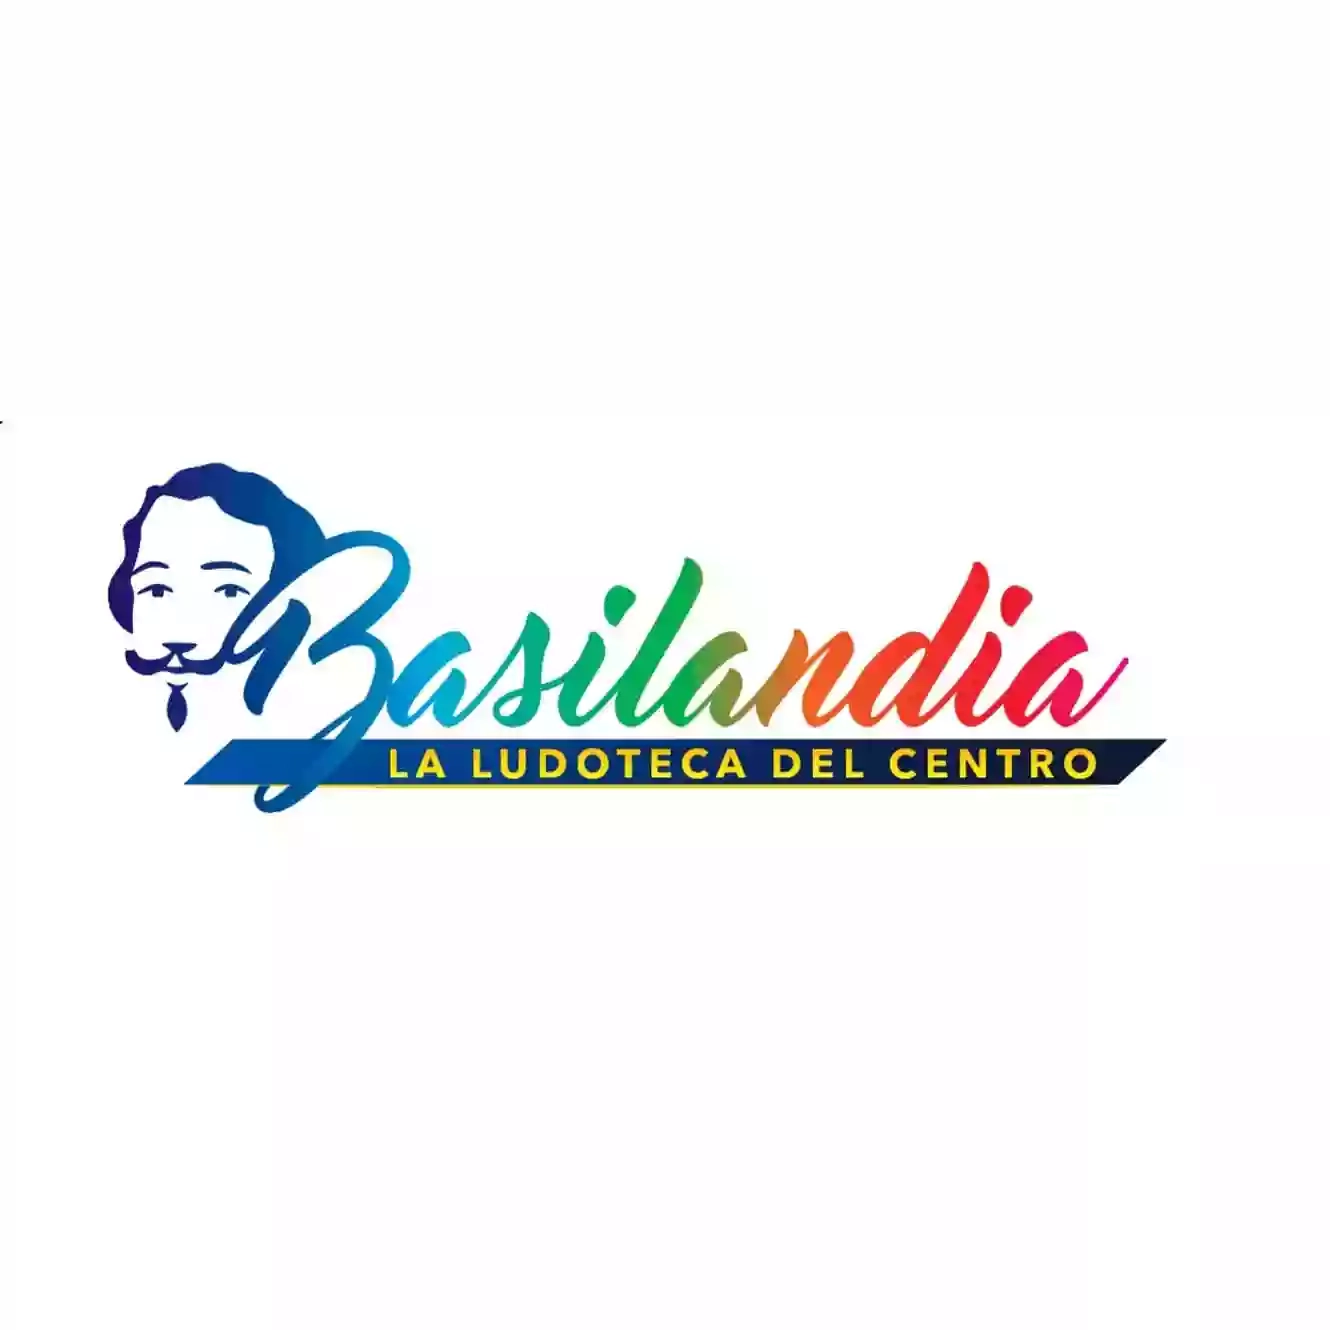 Basilandia-la ludoteca del centro